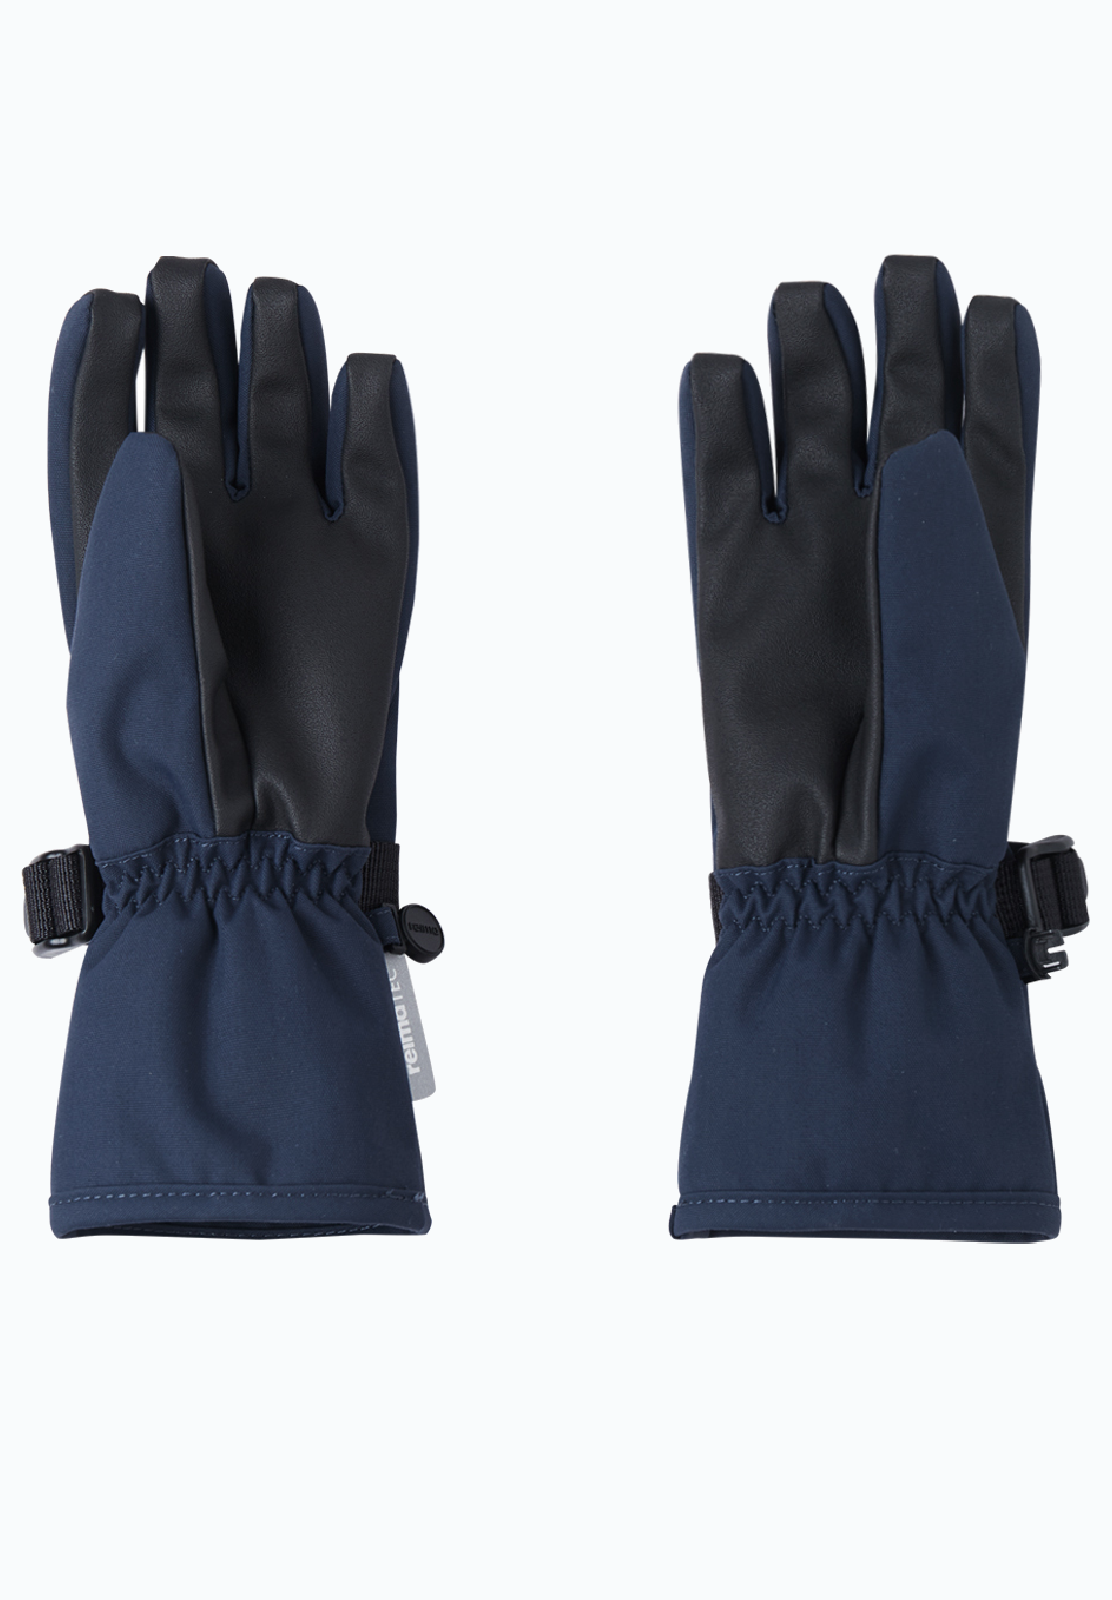 REIMA TEC gefütterte Übergangs-Finger-Handschuhe <br>Pivo<br> Gr. 3 bis 8 (2 Jahre - Erw.) <br> innen warmes Fleece<br> 100% wasserdicht<br> ideal für Frühling&Herbst<br> WS 12'000 mm